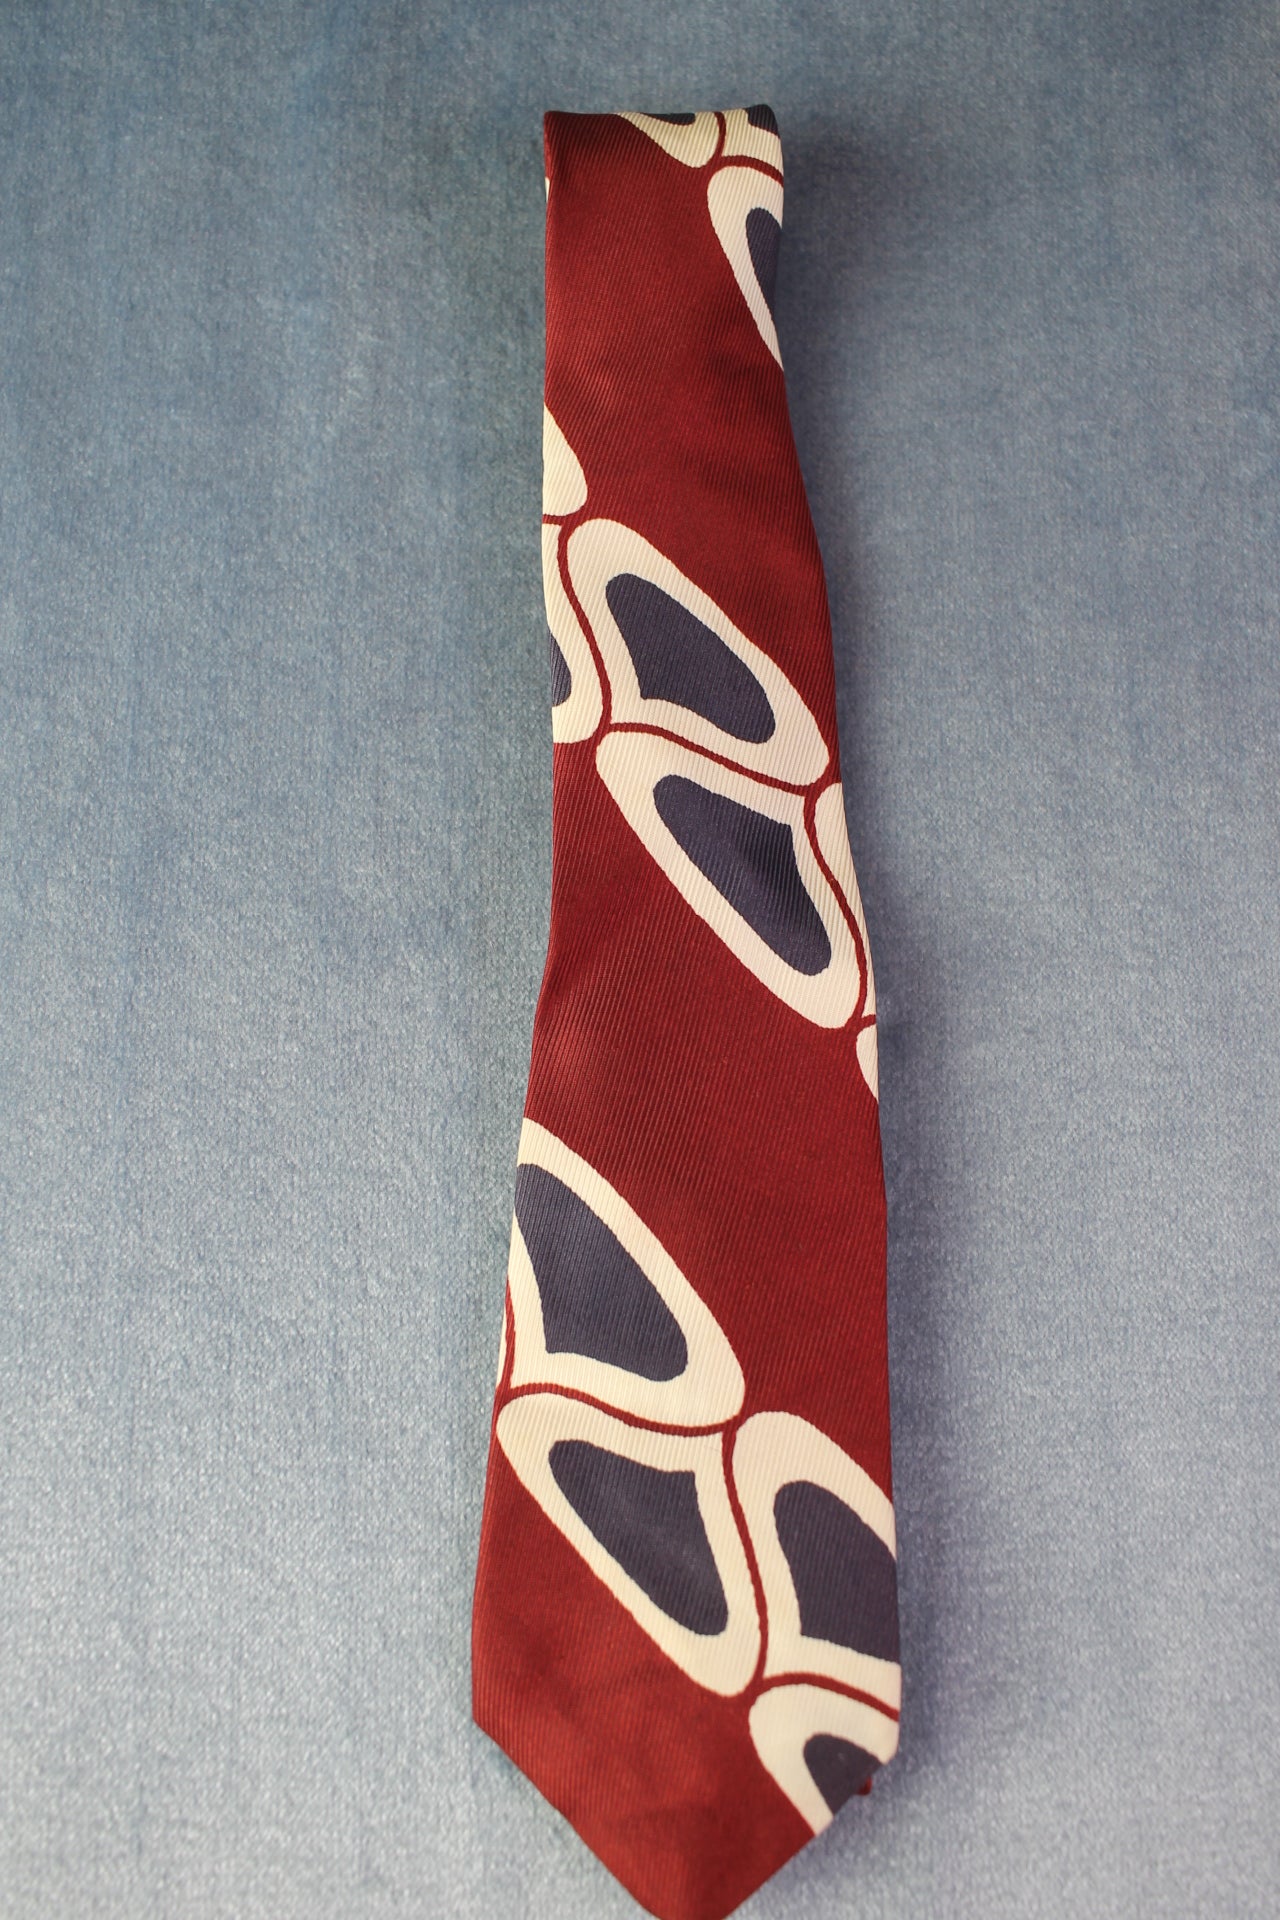 Vintage Hand Painted dark red blue white pattern tie